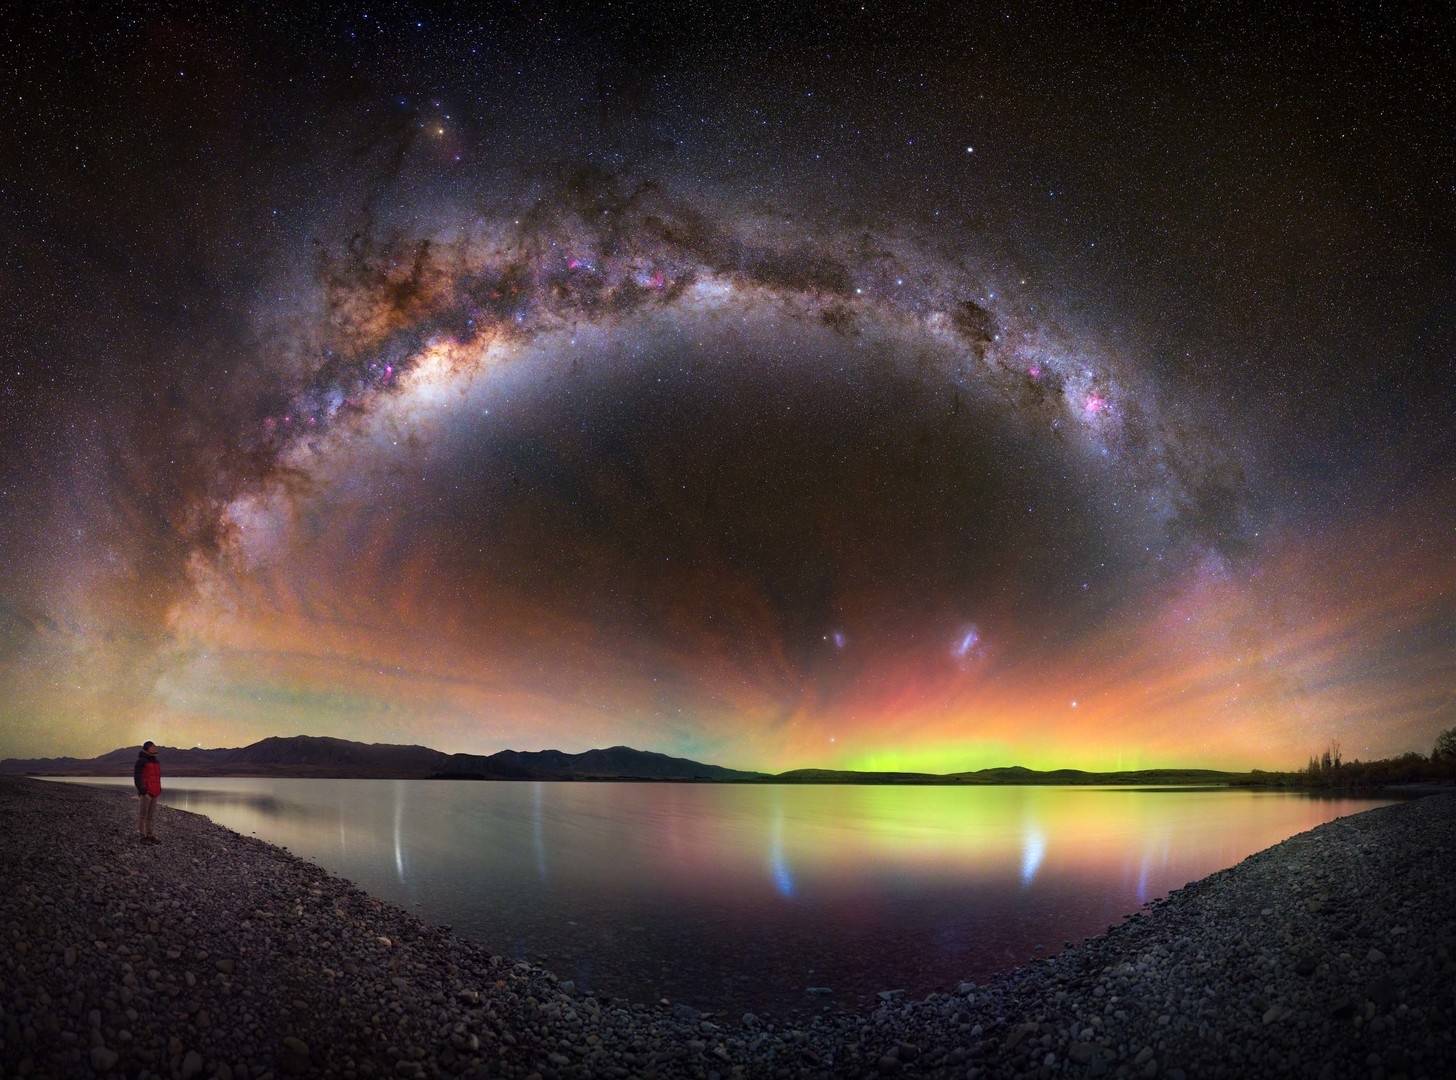 Arco de la Vía Láctea enmarcando una aurora y airglow en el cielo nocturno